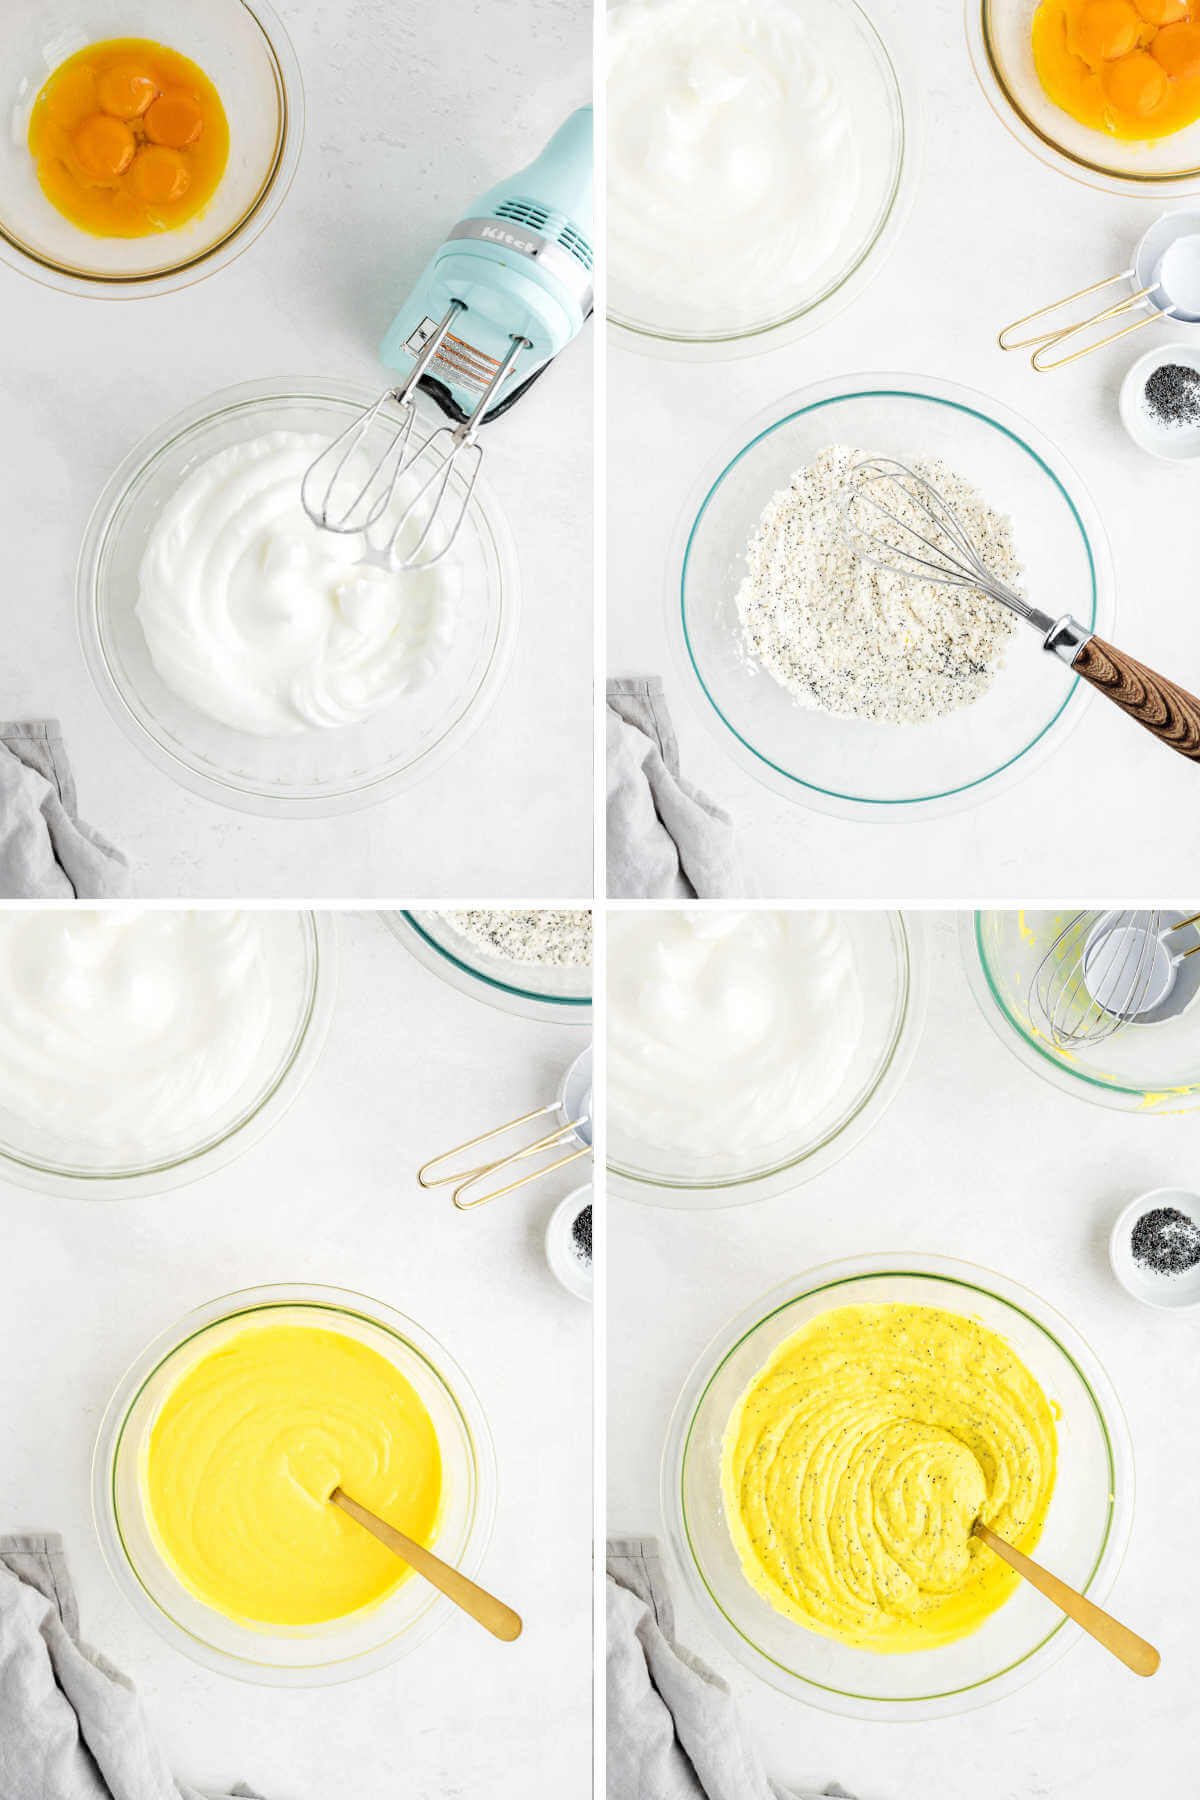 preparing batter for lemon ricotta pancakes; whisking egg whites, mixing dry ingredients, mixing wet ingredients.